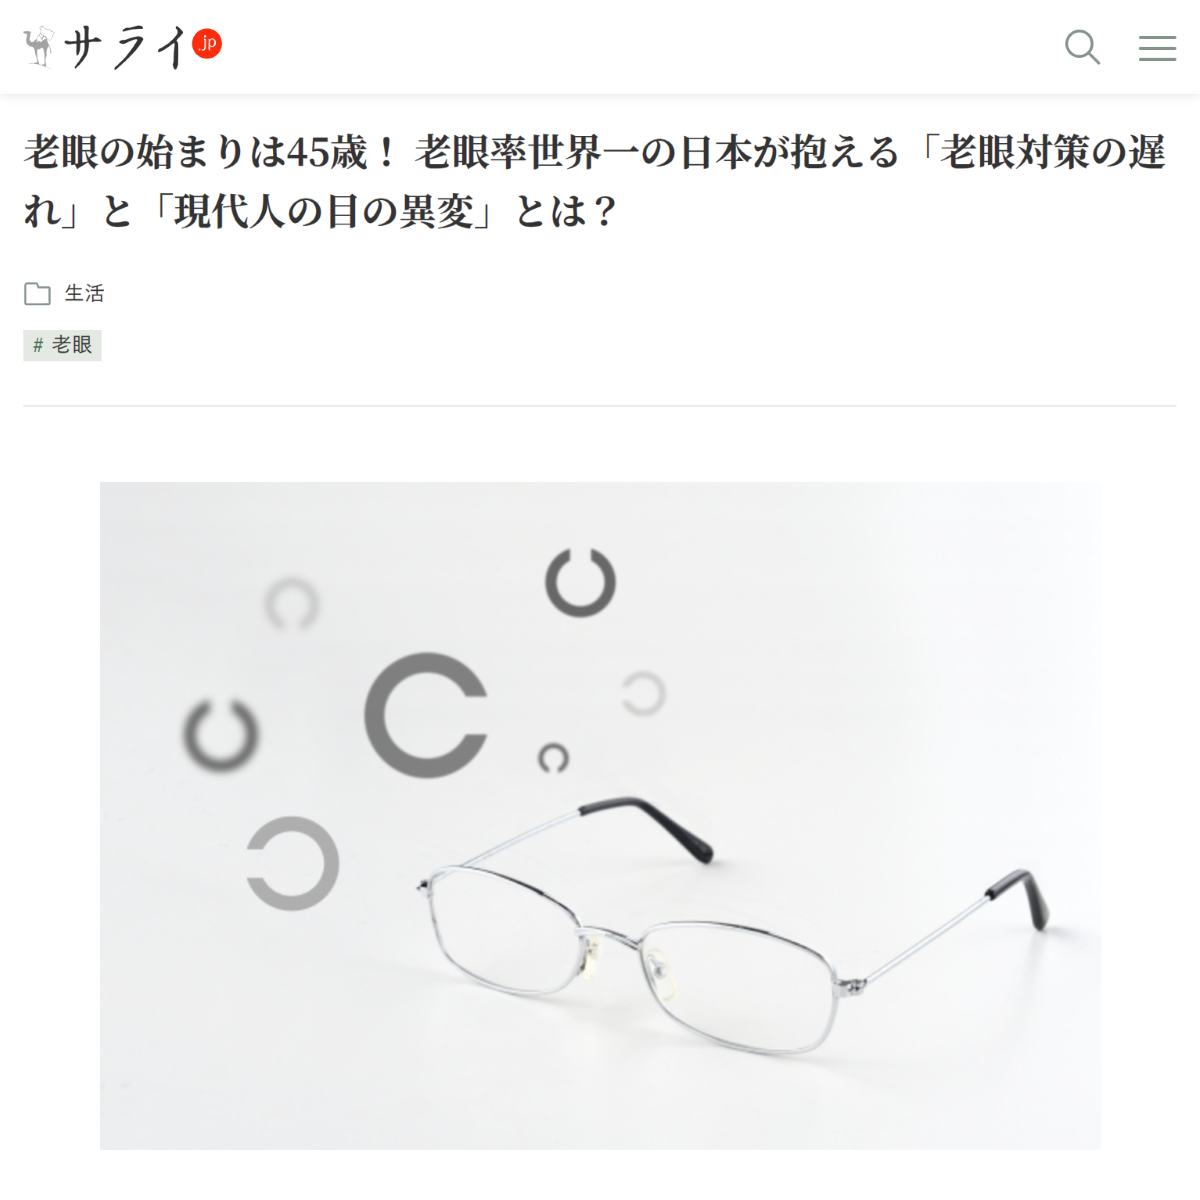 老眼の始まりは45歳！ 老眼率世界一の日本が抱える「老眼対策の遅れ」と「現代人の目の異変」とは？ | サライ.jp｜小学館の雑誌『サライ』公式サイト